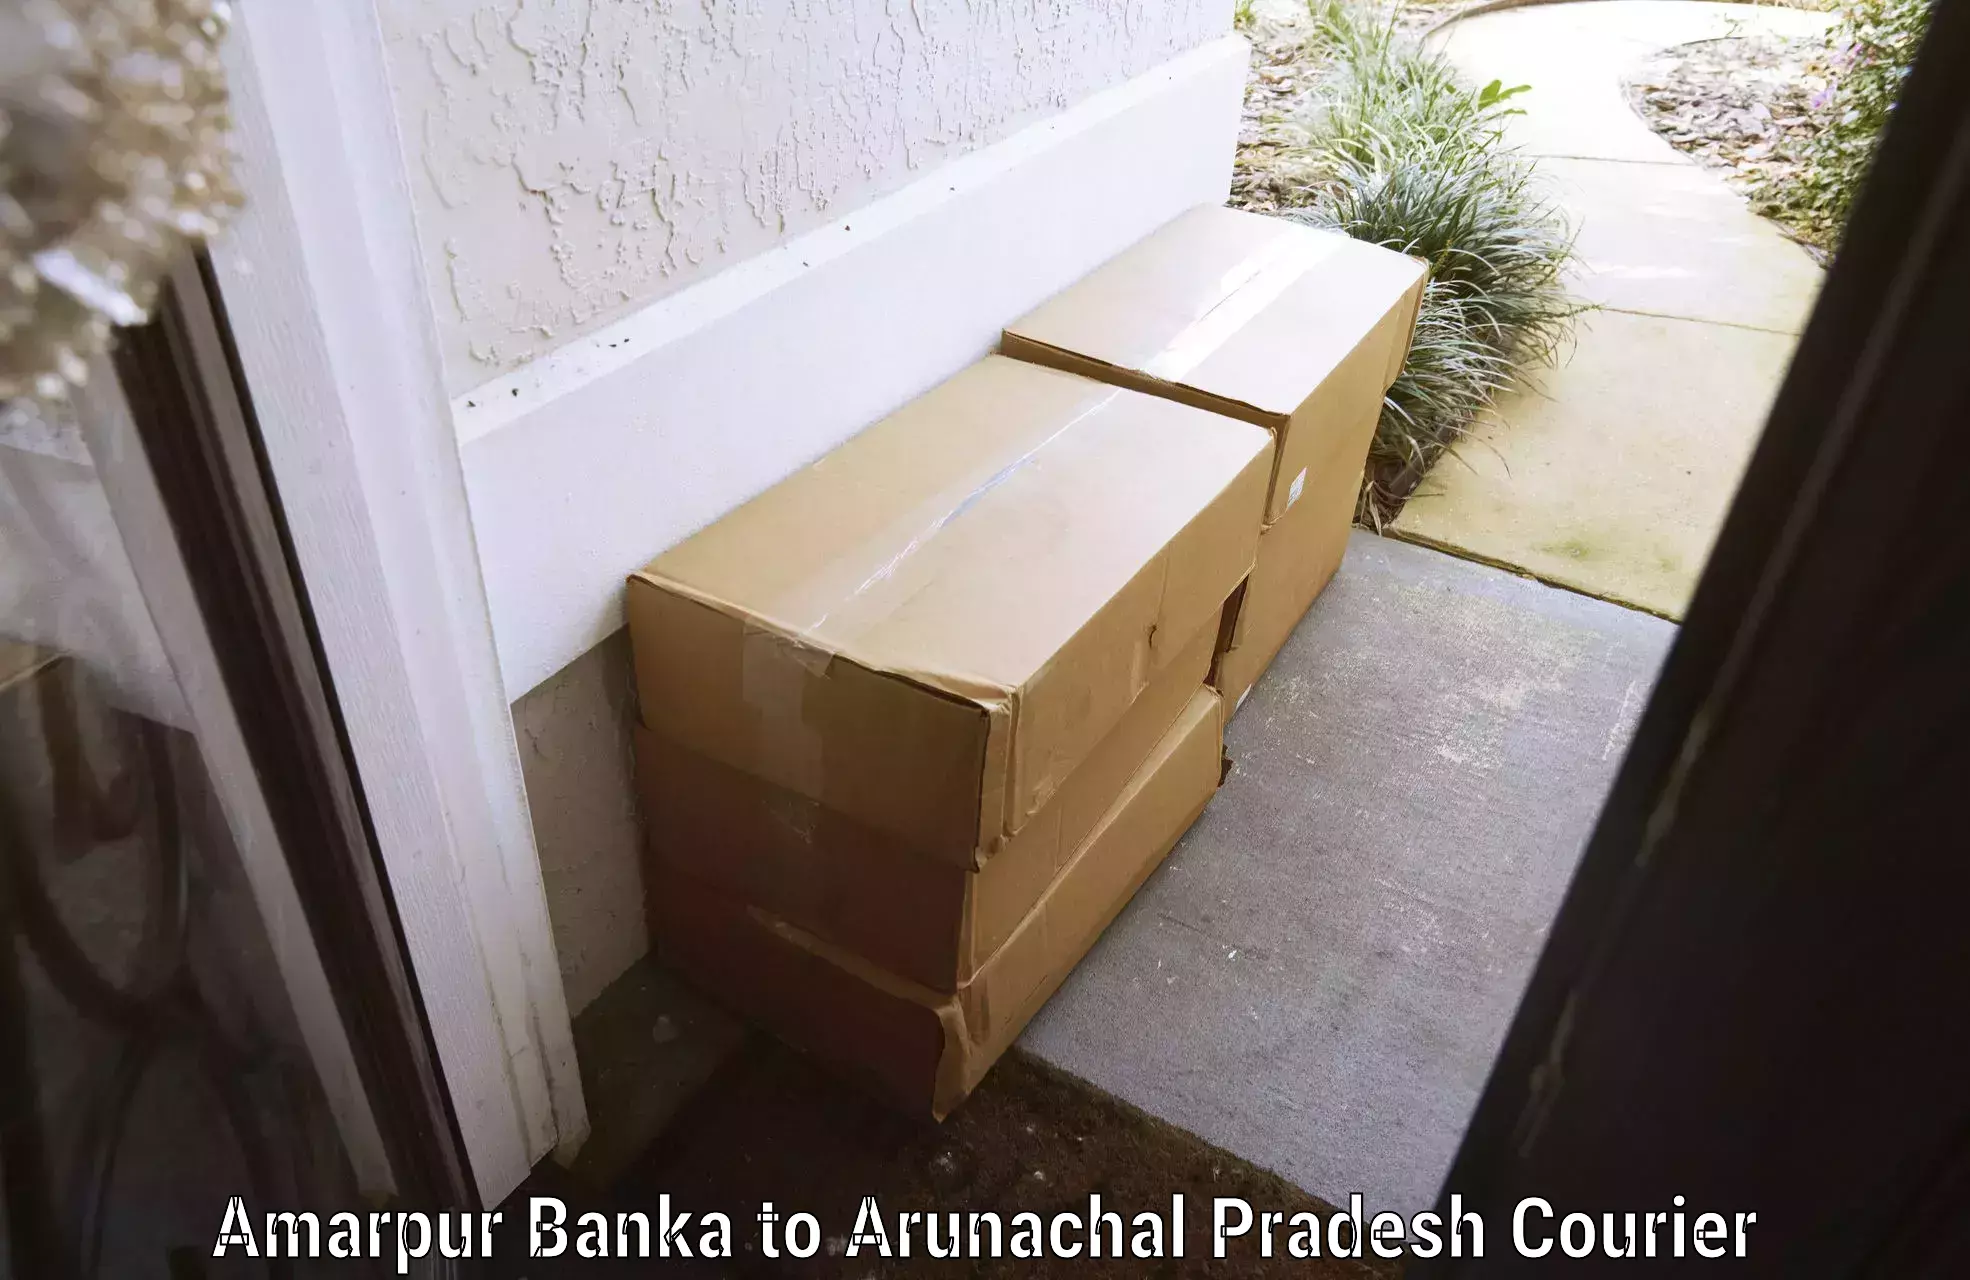 Luggage transit service Amarpur Banka to Arunachal Pradesh